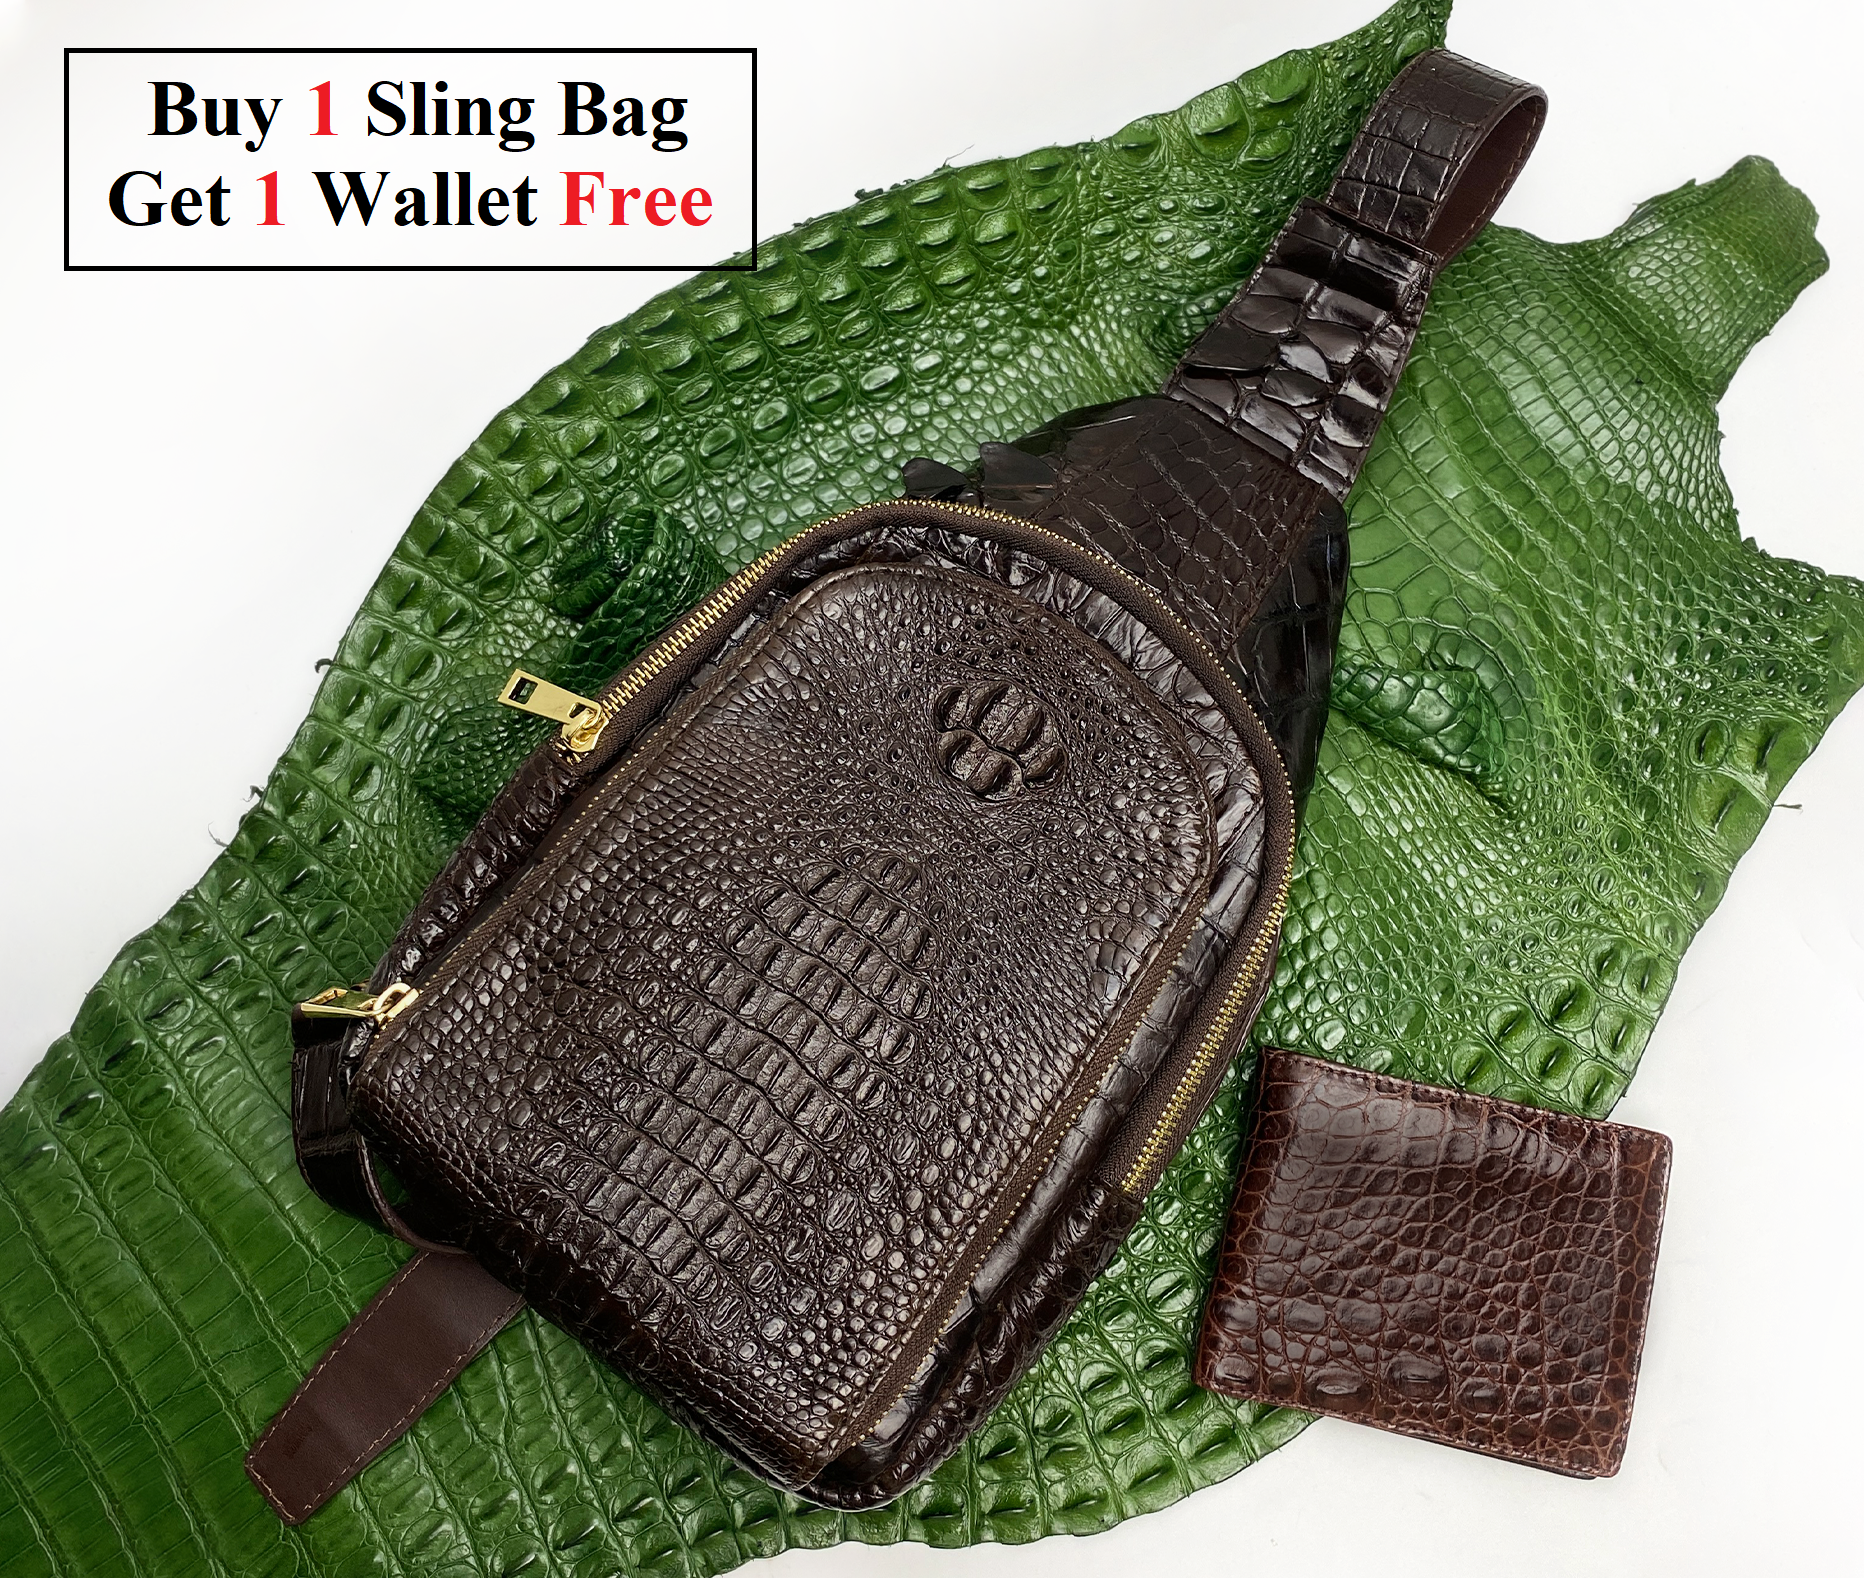 Handcrafted Alligator Skin Leather Backpack Shoulder Bag Travel Bag White